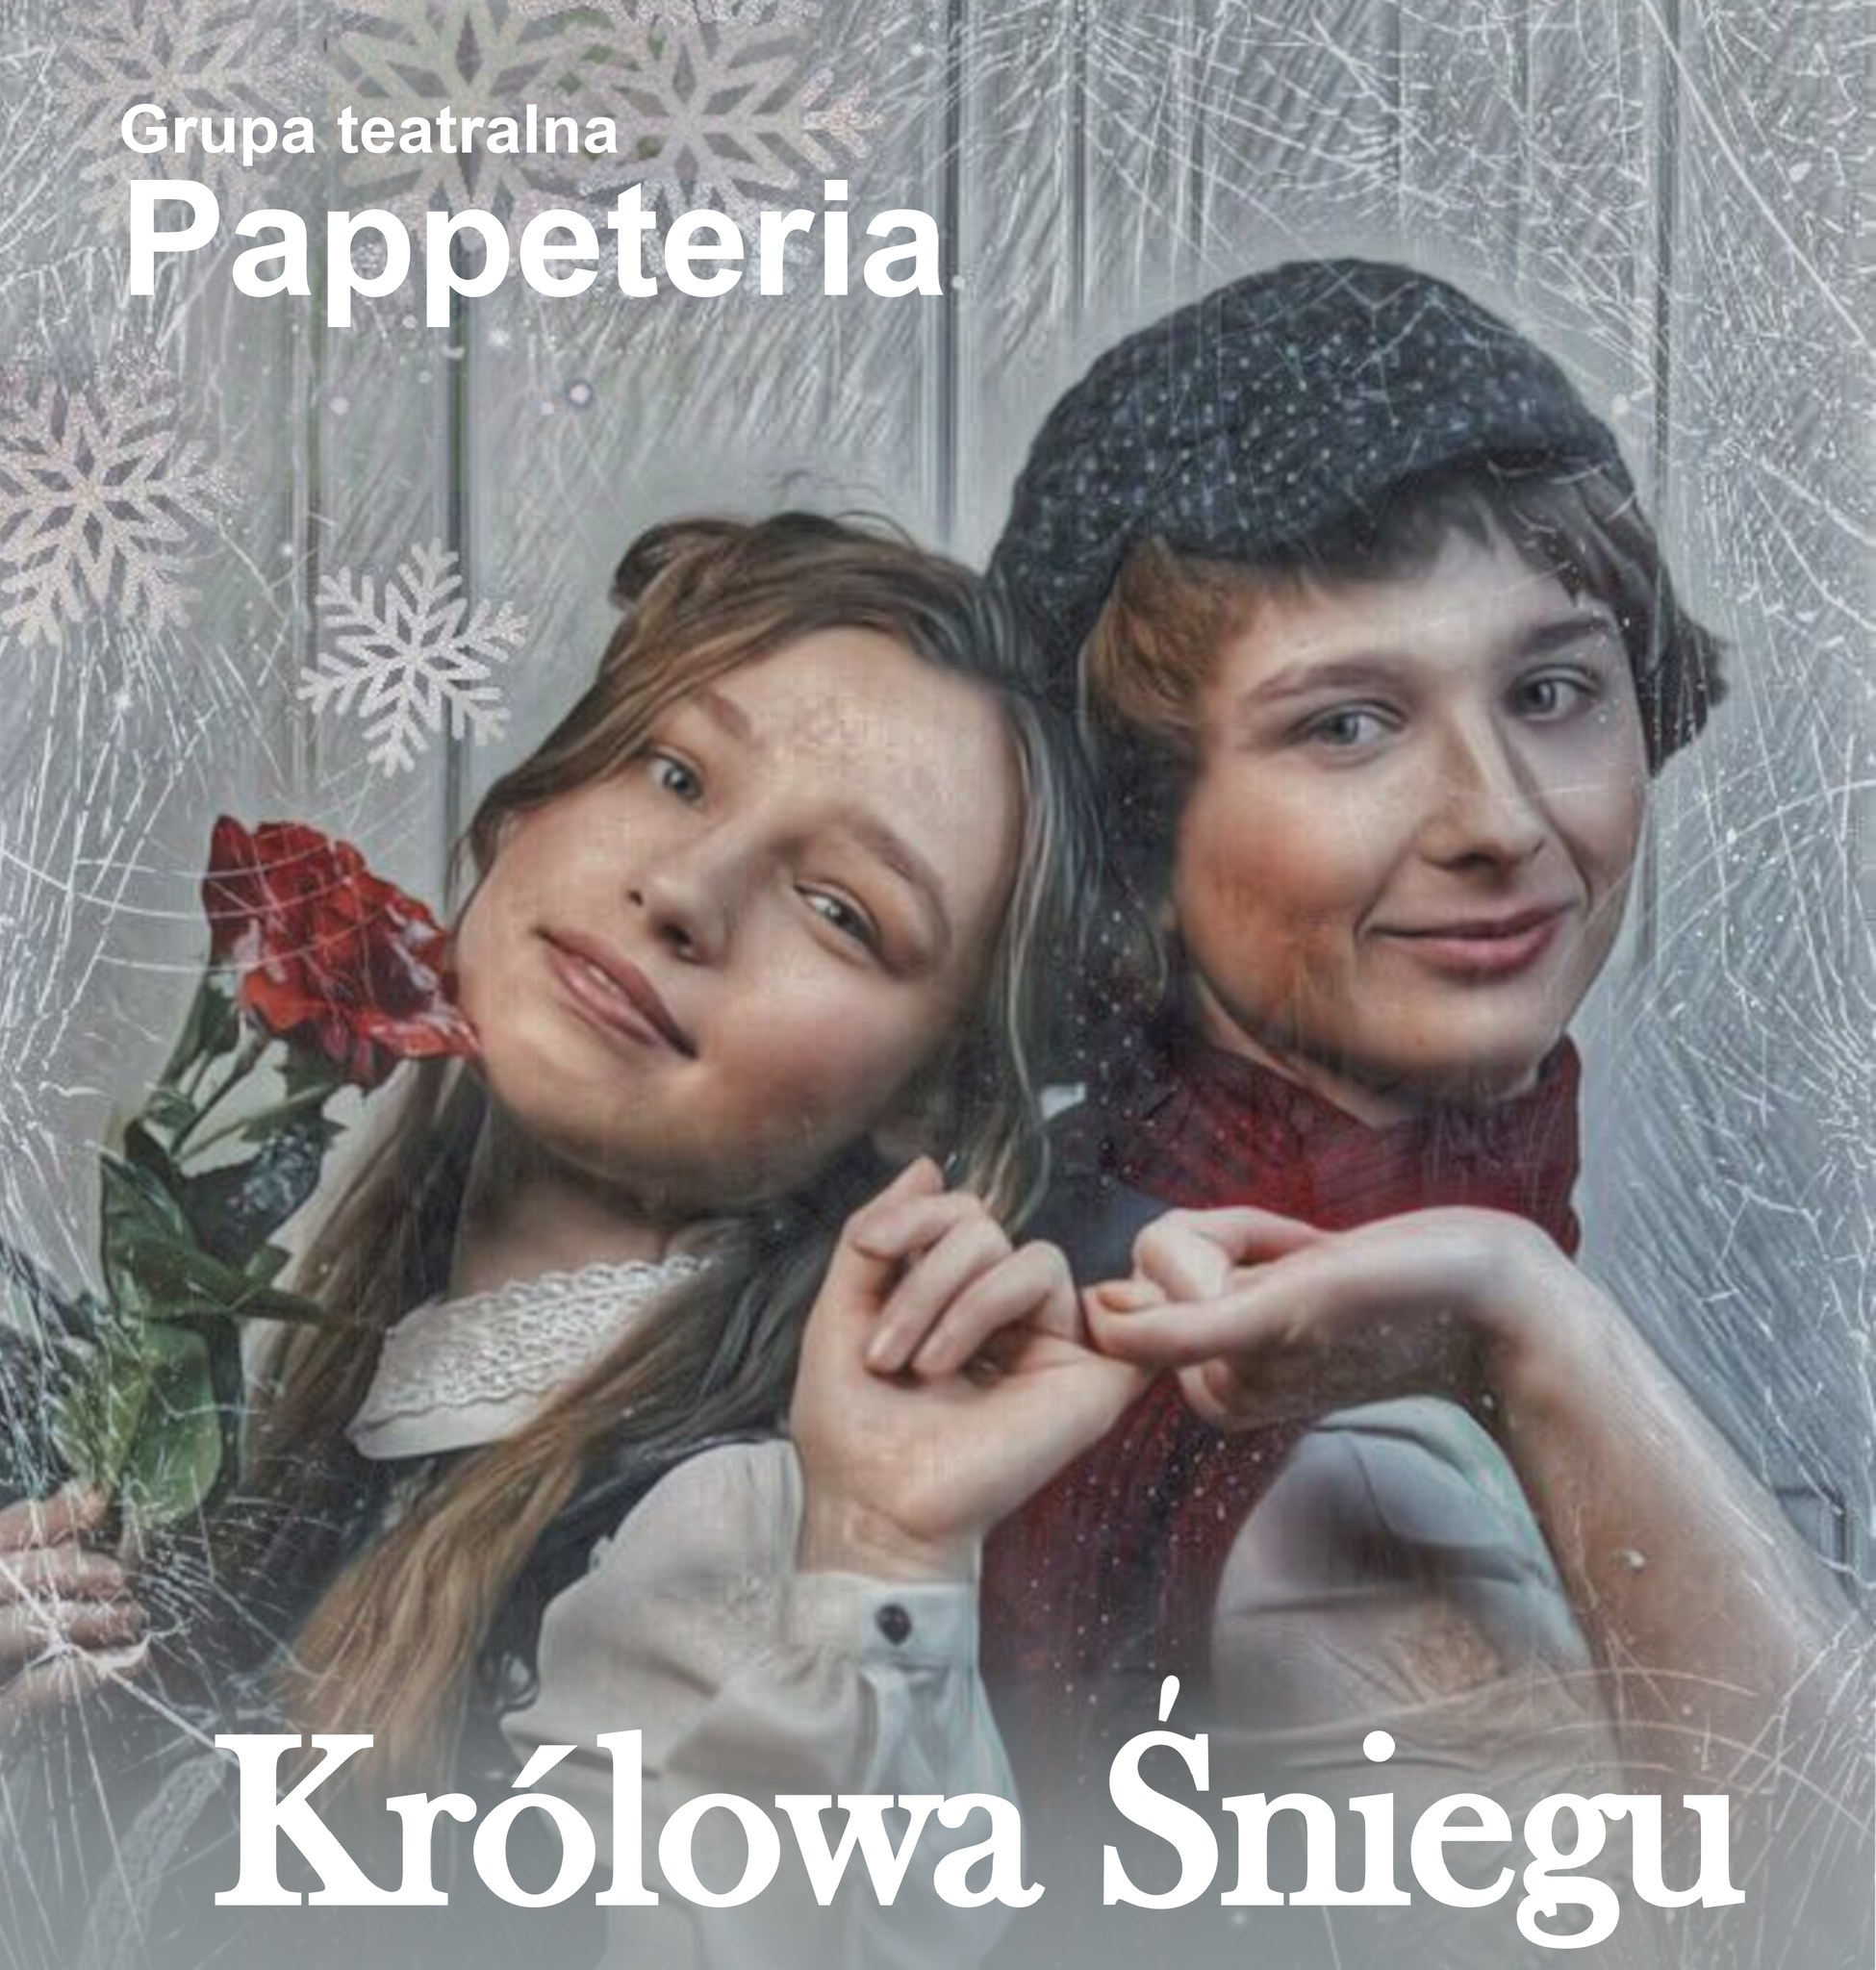  Pappeteria:Królowa śniegu Na zdjęciu plakat przedstawienia